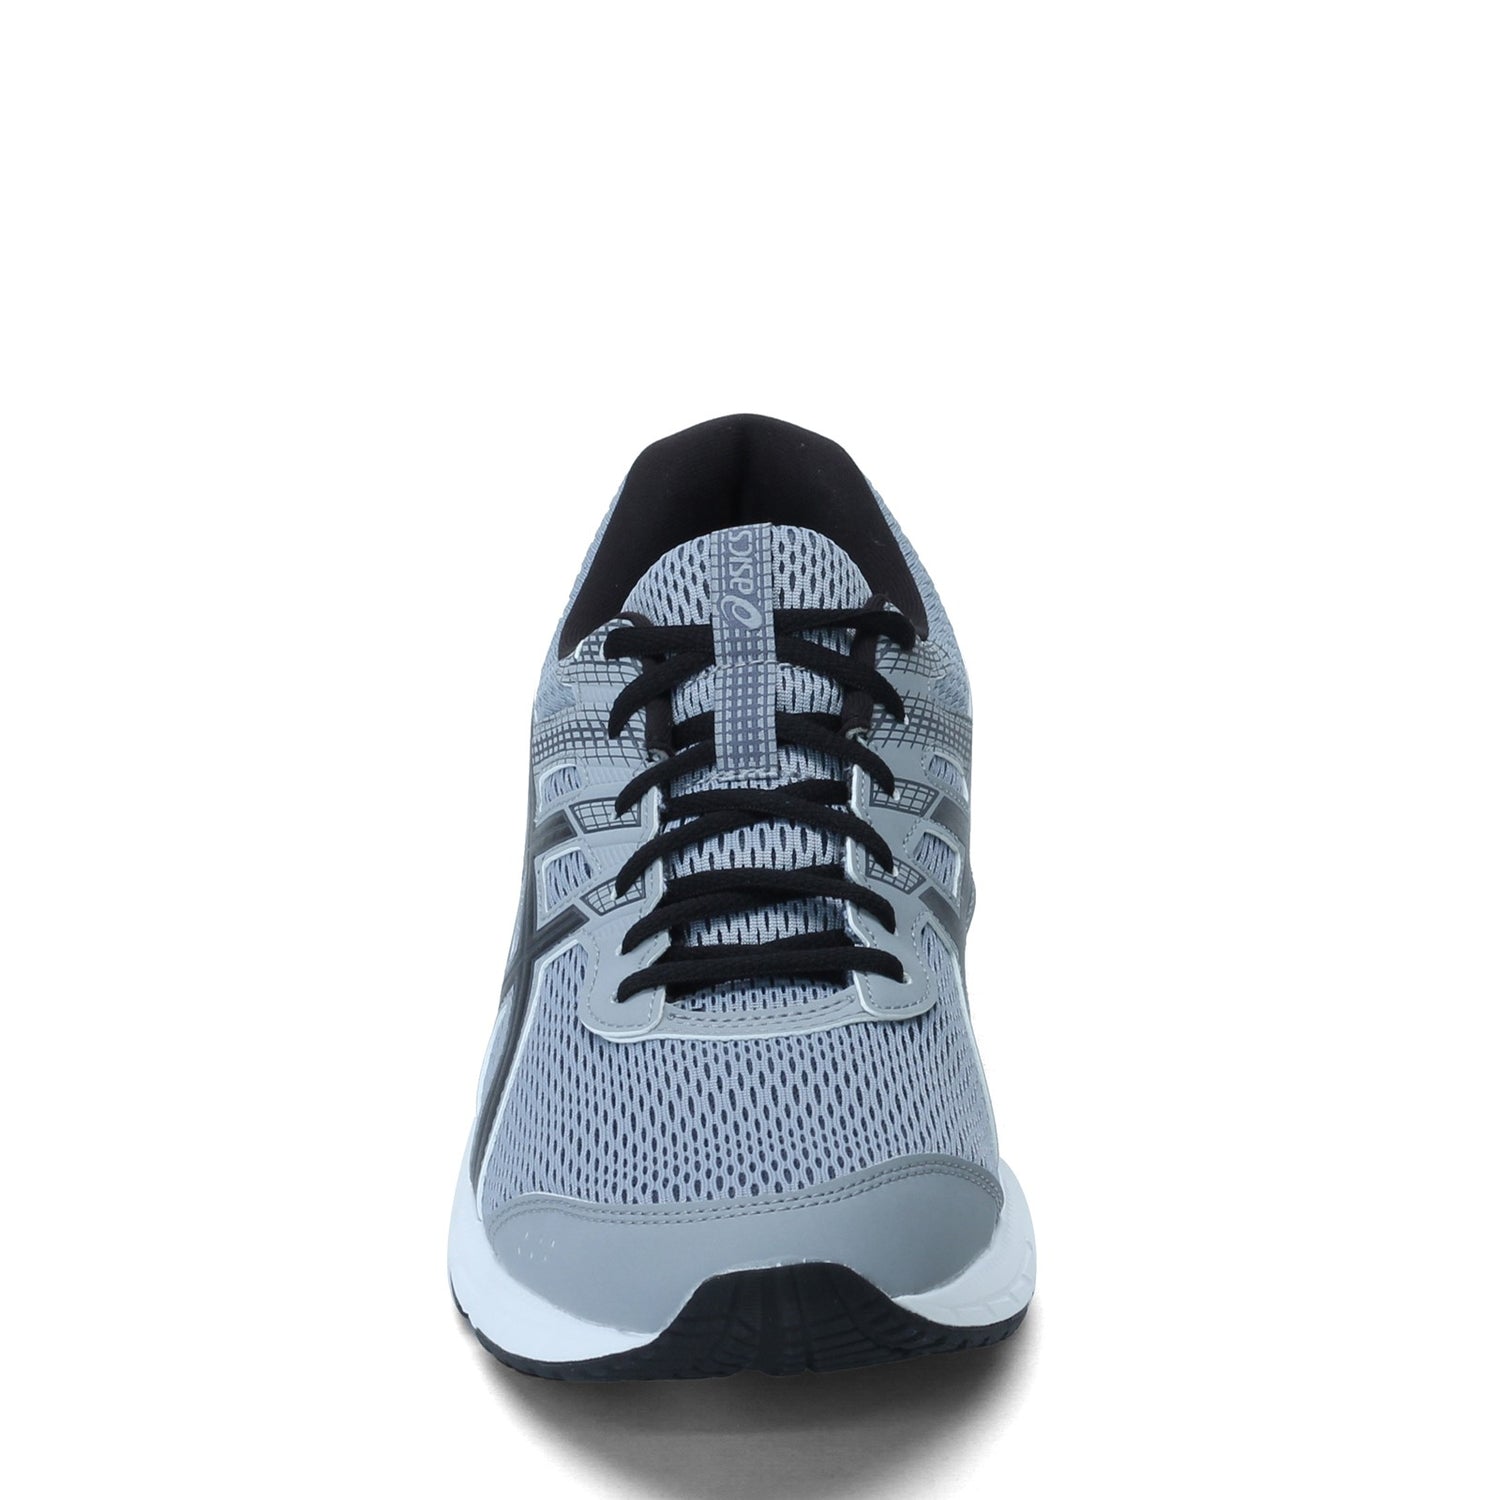 Peltz Shoes  Men's ASICS GEL-Contend 6 Running Shoe GREY BLACK 1011A667-020